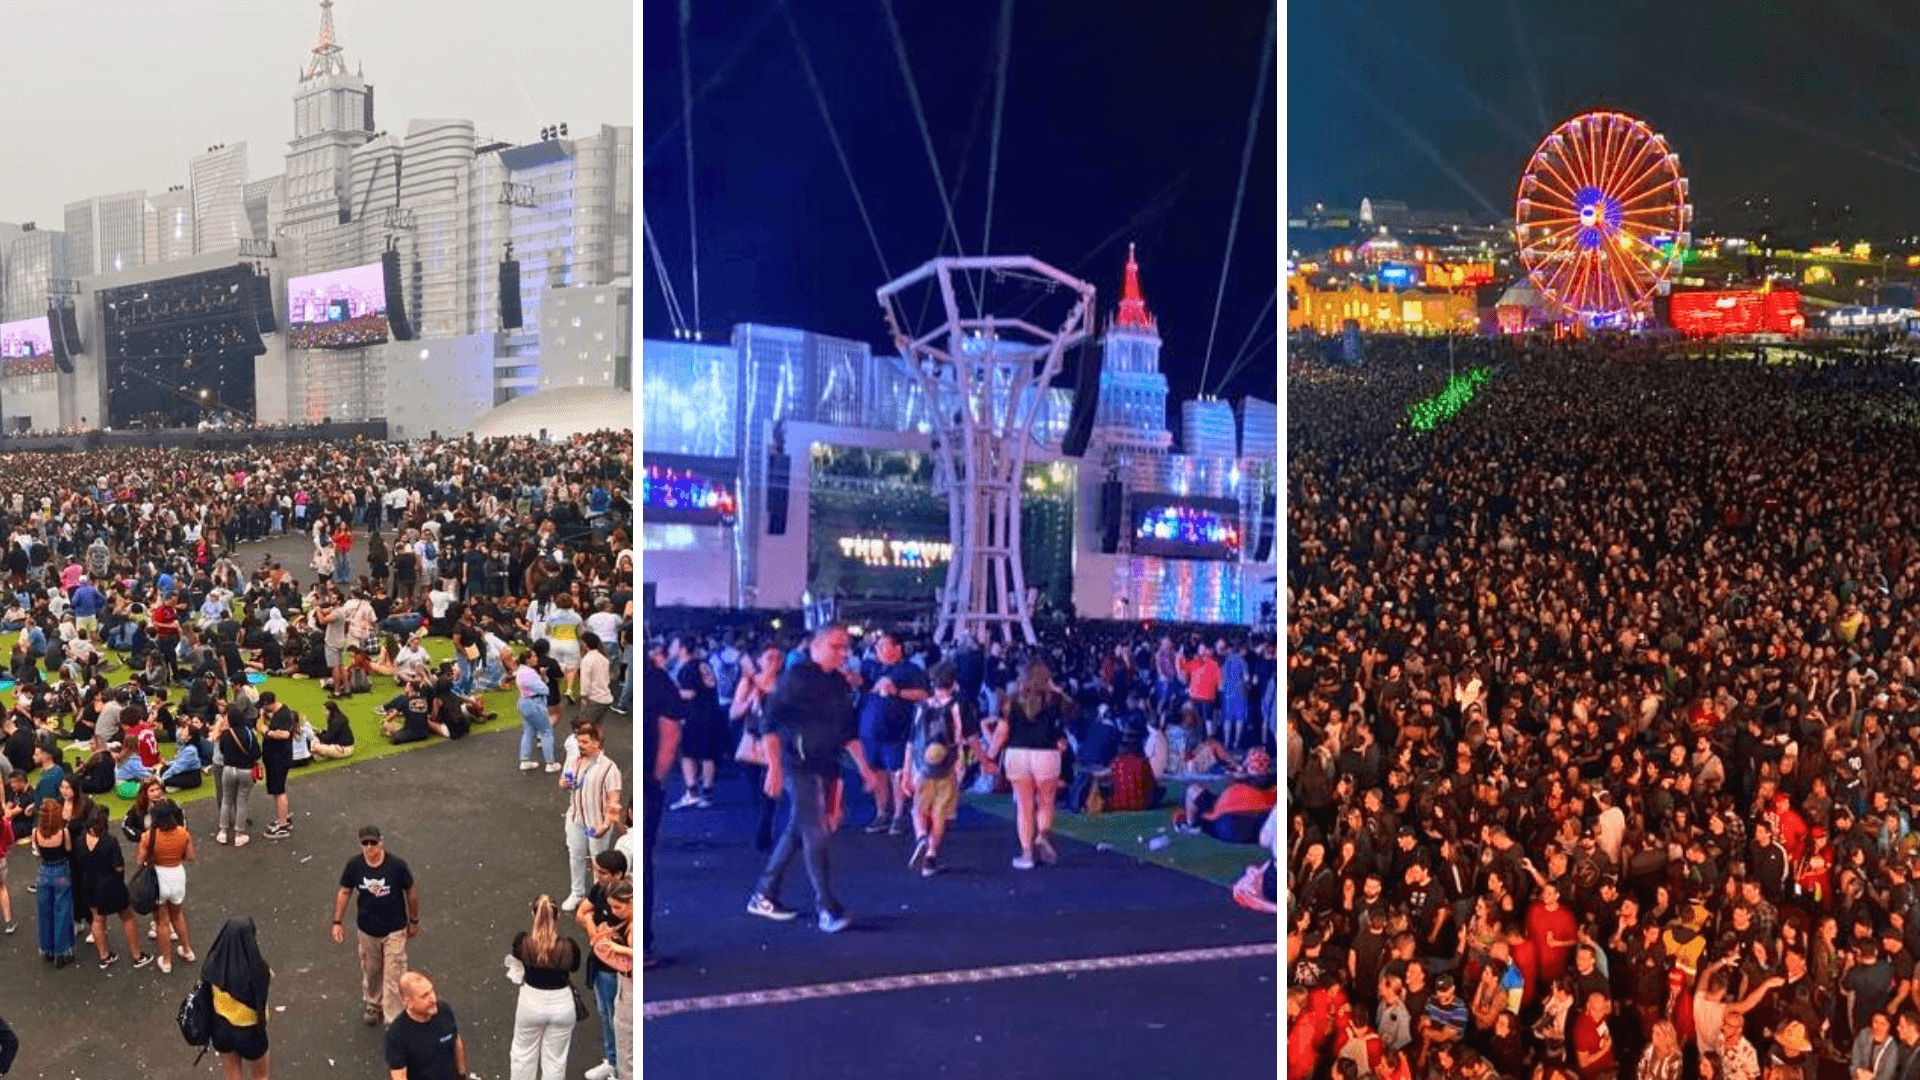 #TOPTHETOWN: As marcas por trás do maior festival de música, arte e cultura de SP